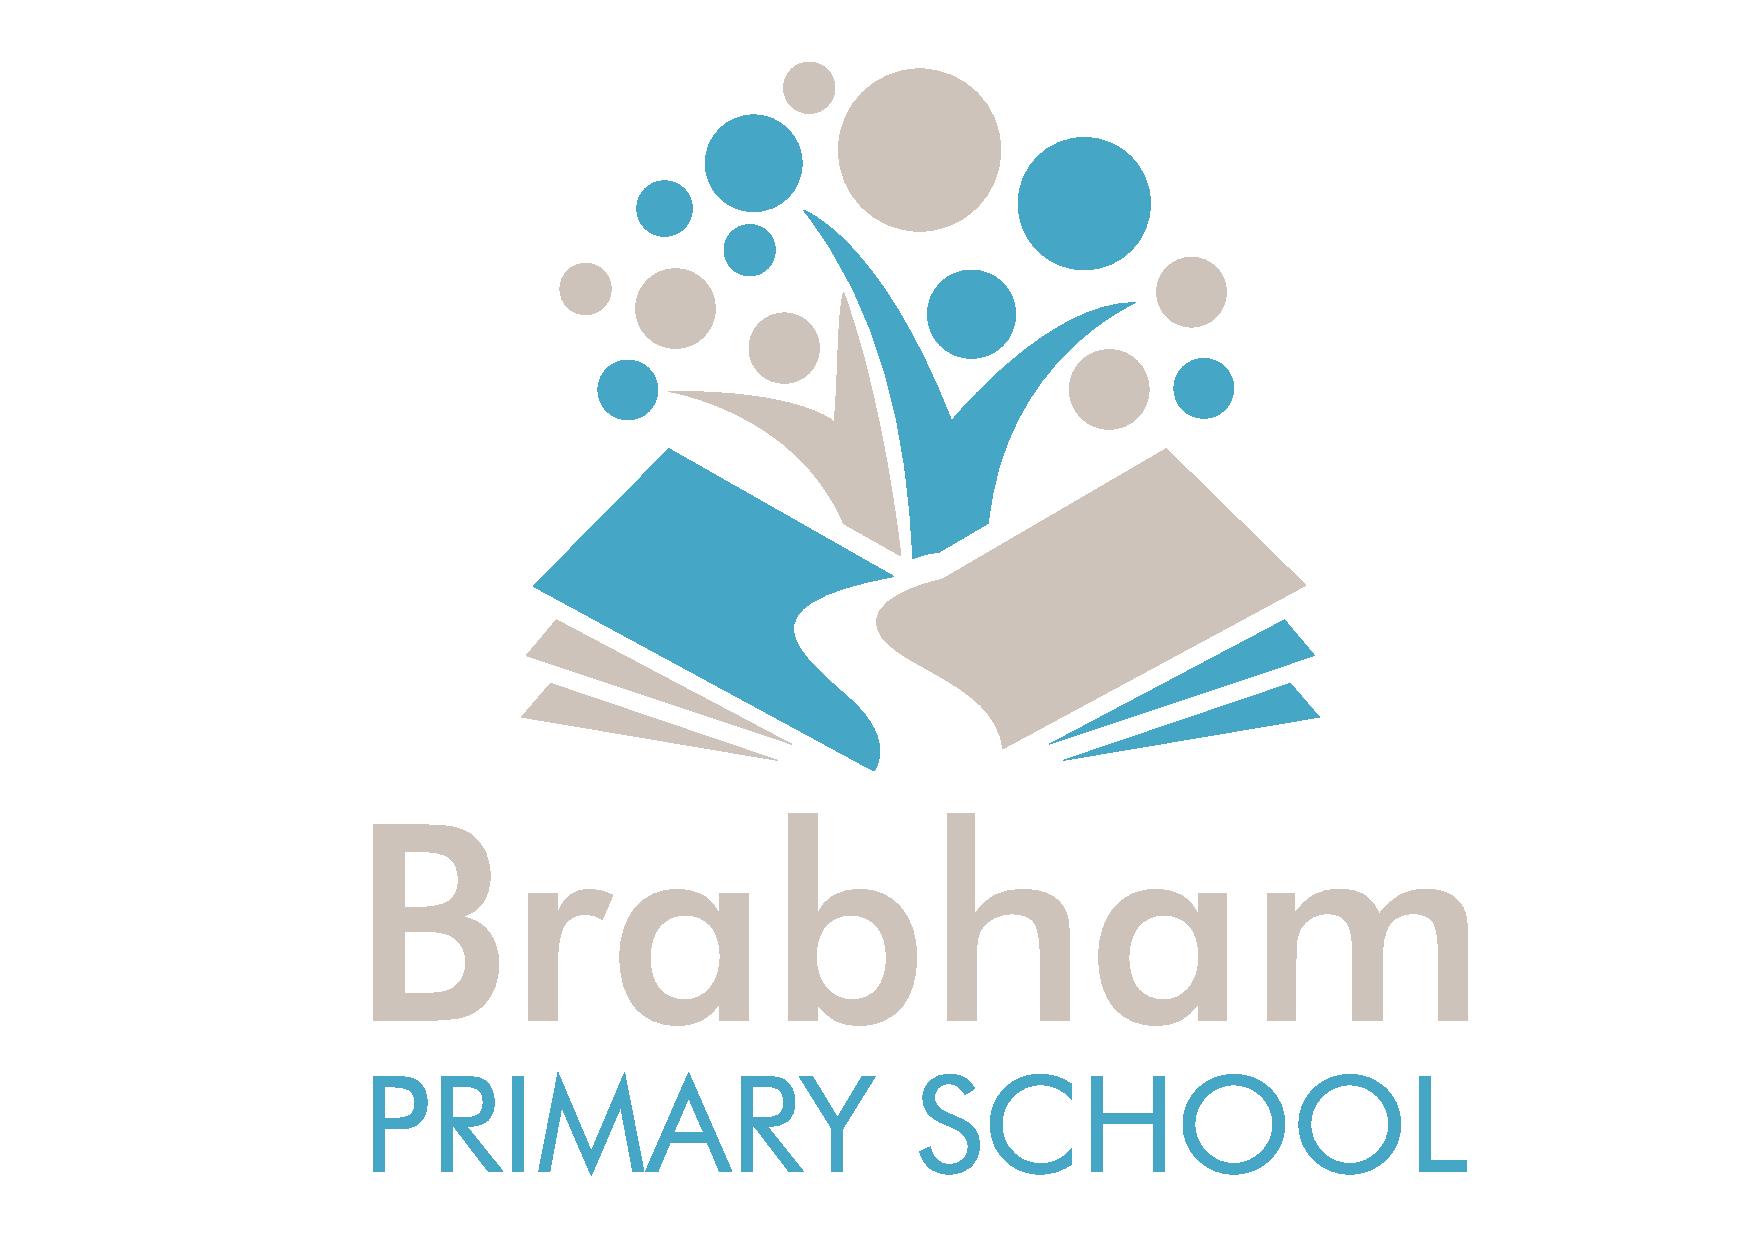 Brabham Primary School